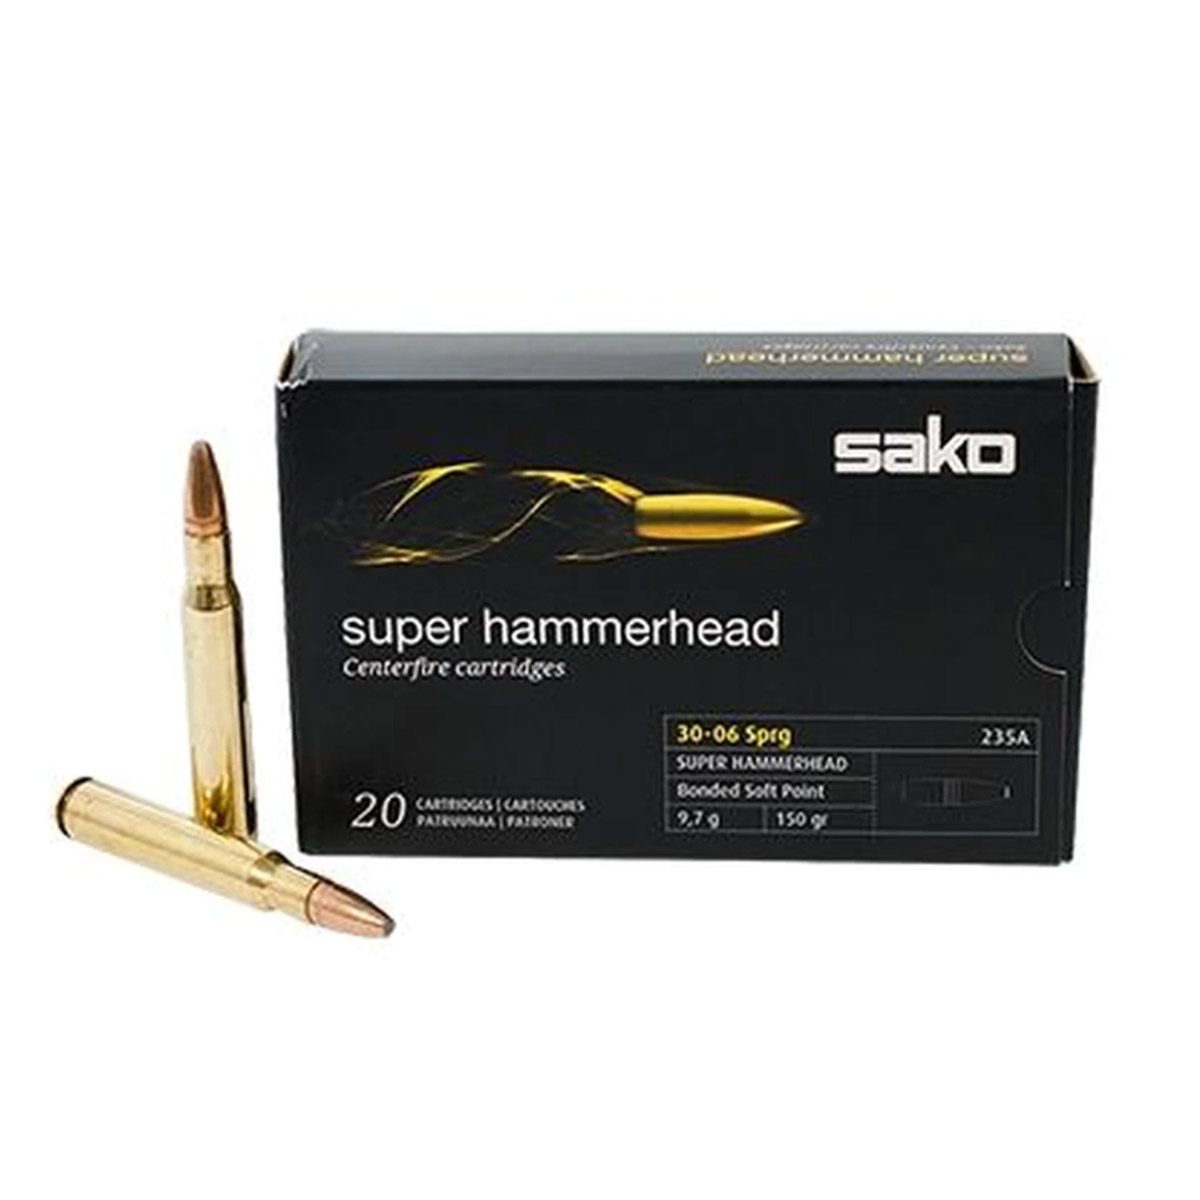 Sako Ammunition 30-06 Super Hammerhead 150 Gr. – 20 Rounds